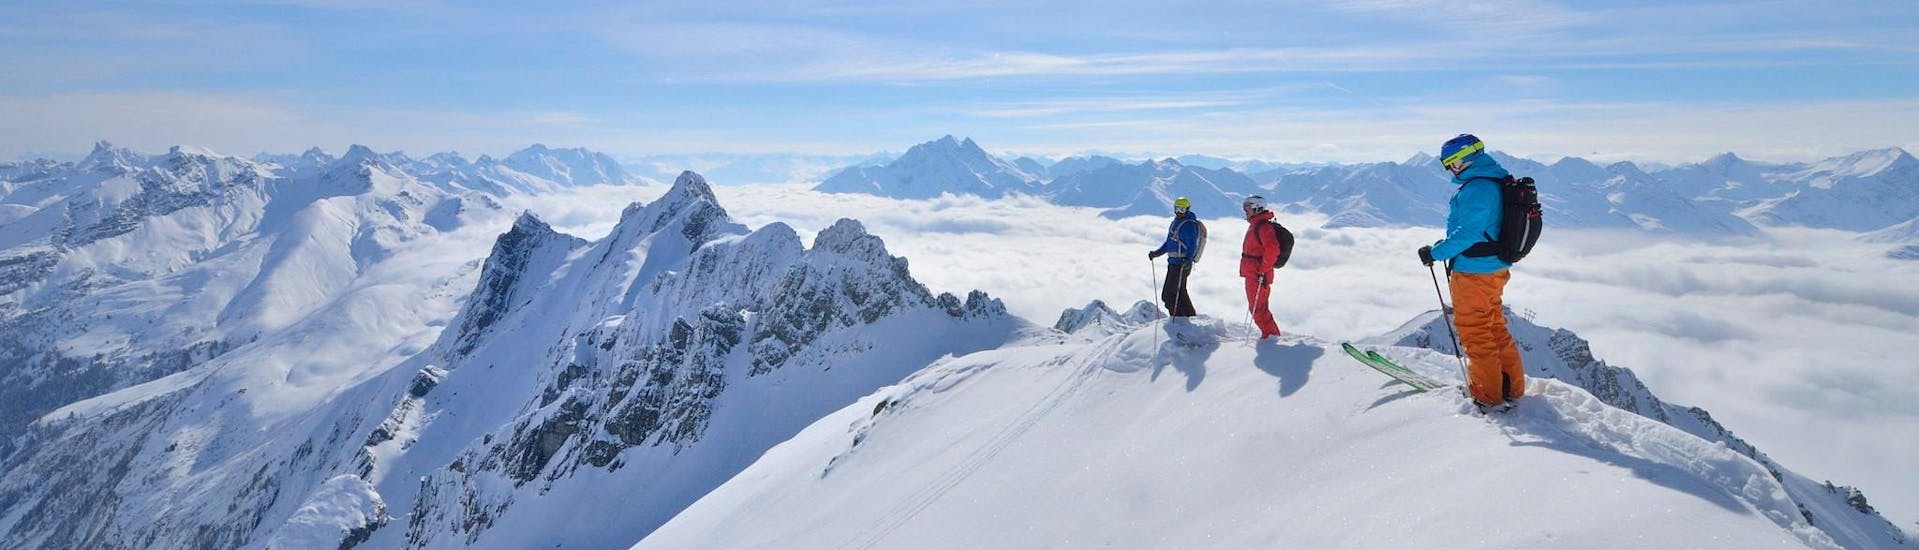 Tre sciatori si trovano sulla cima di una montagna, con vista su un panorama alpino coperto di neve, mentre si preparano per Valanghe & Sicurezza per tutti i livelli con Freeride Hotspot.